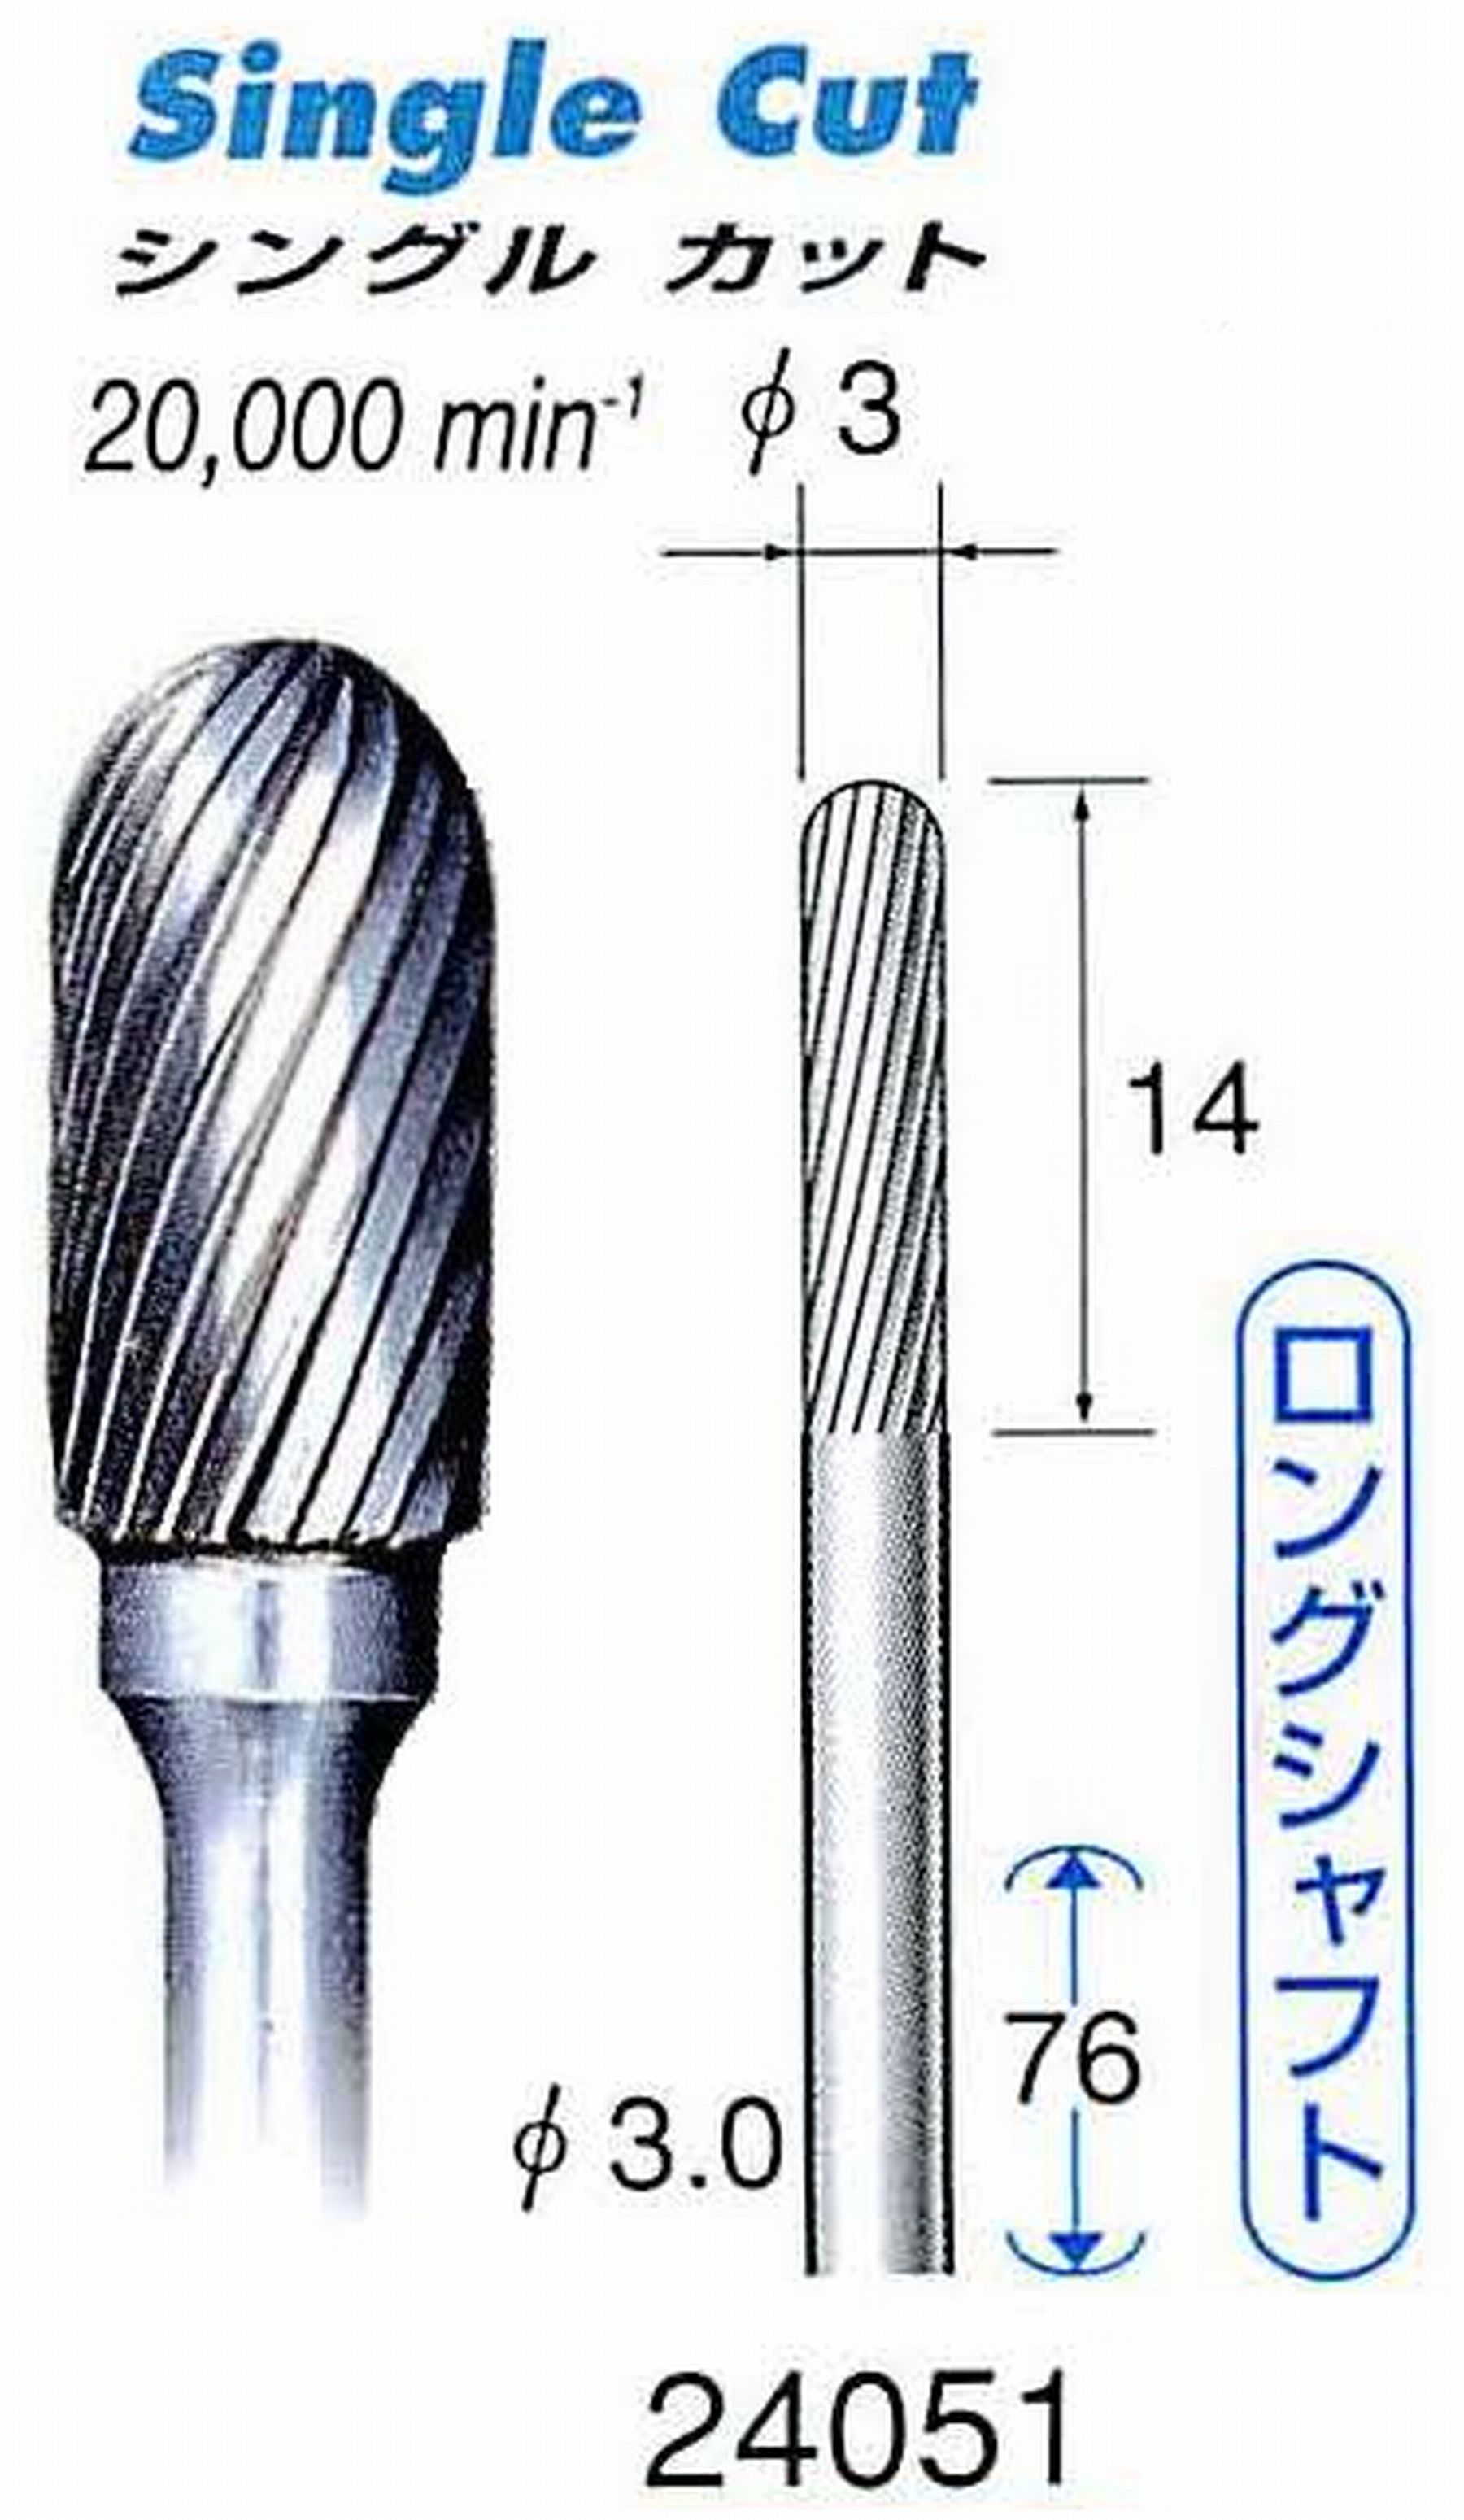 ナカニシ/NAKANISHI 超硬カッター(ロングシャフト) 軸径(シャンク)φ3.0mm 24051